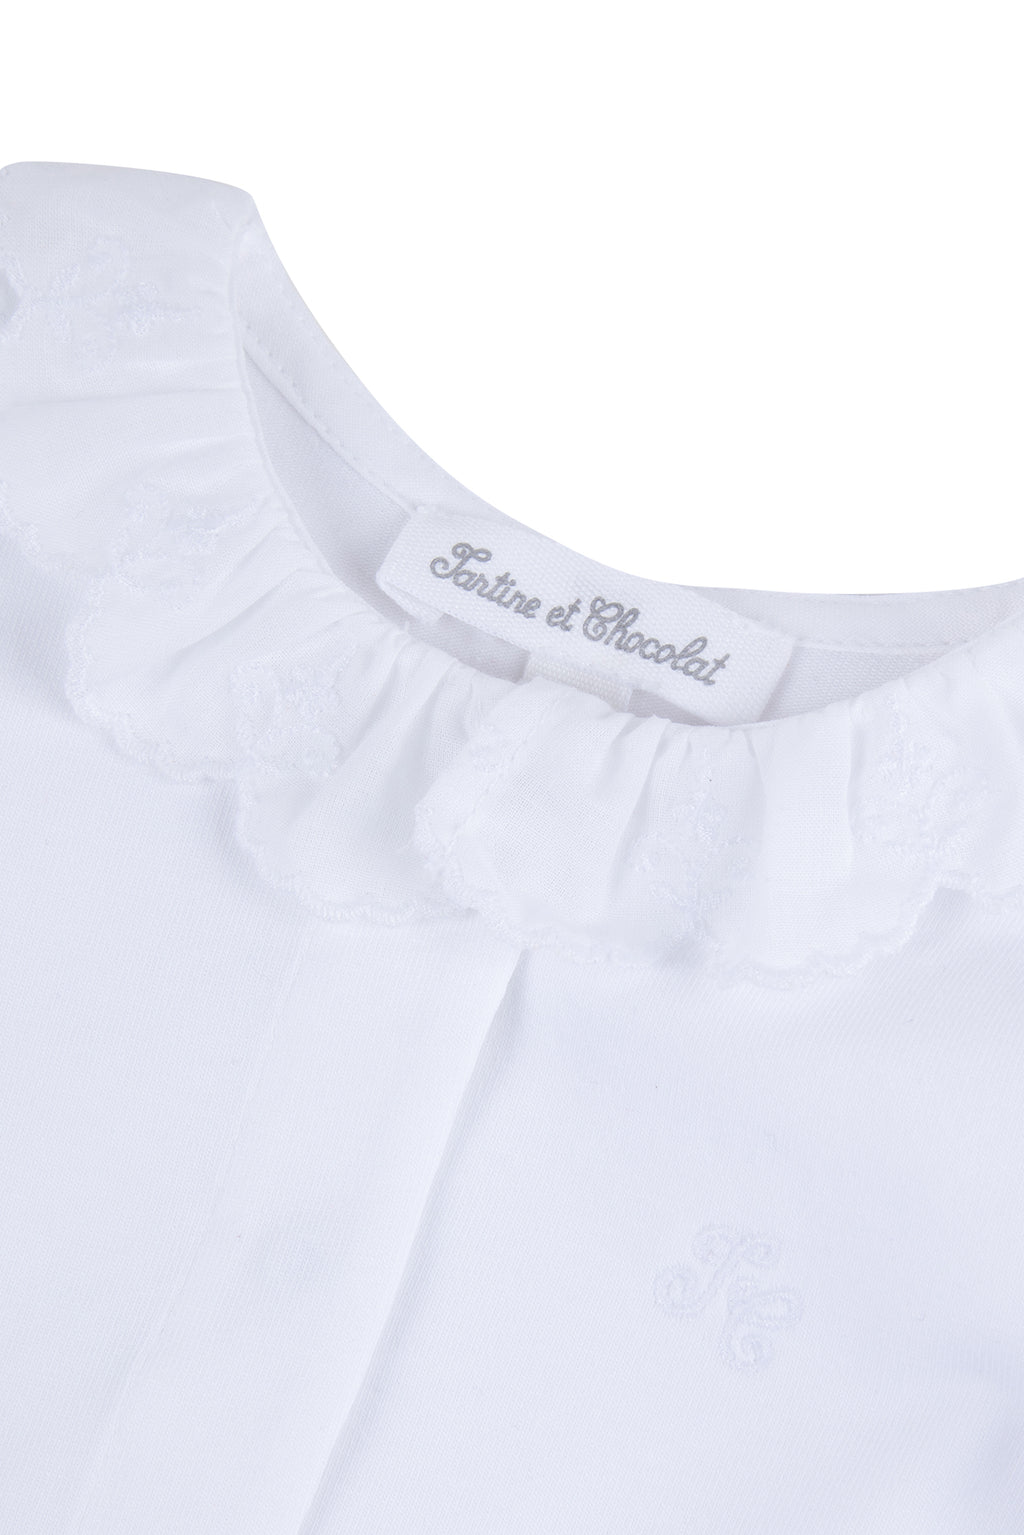 Body - White Ruffled collar